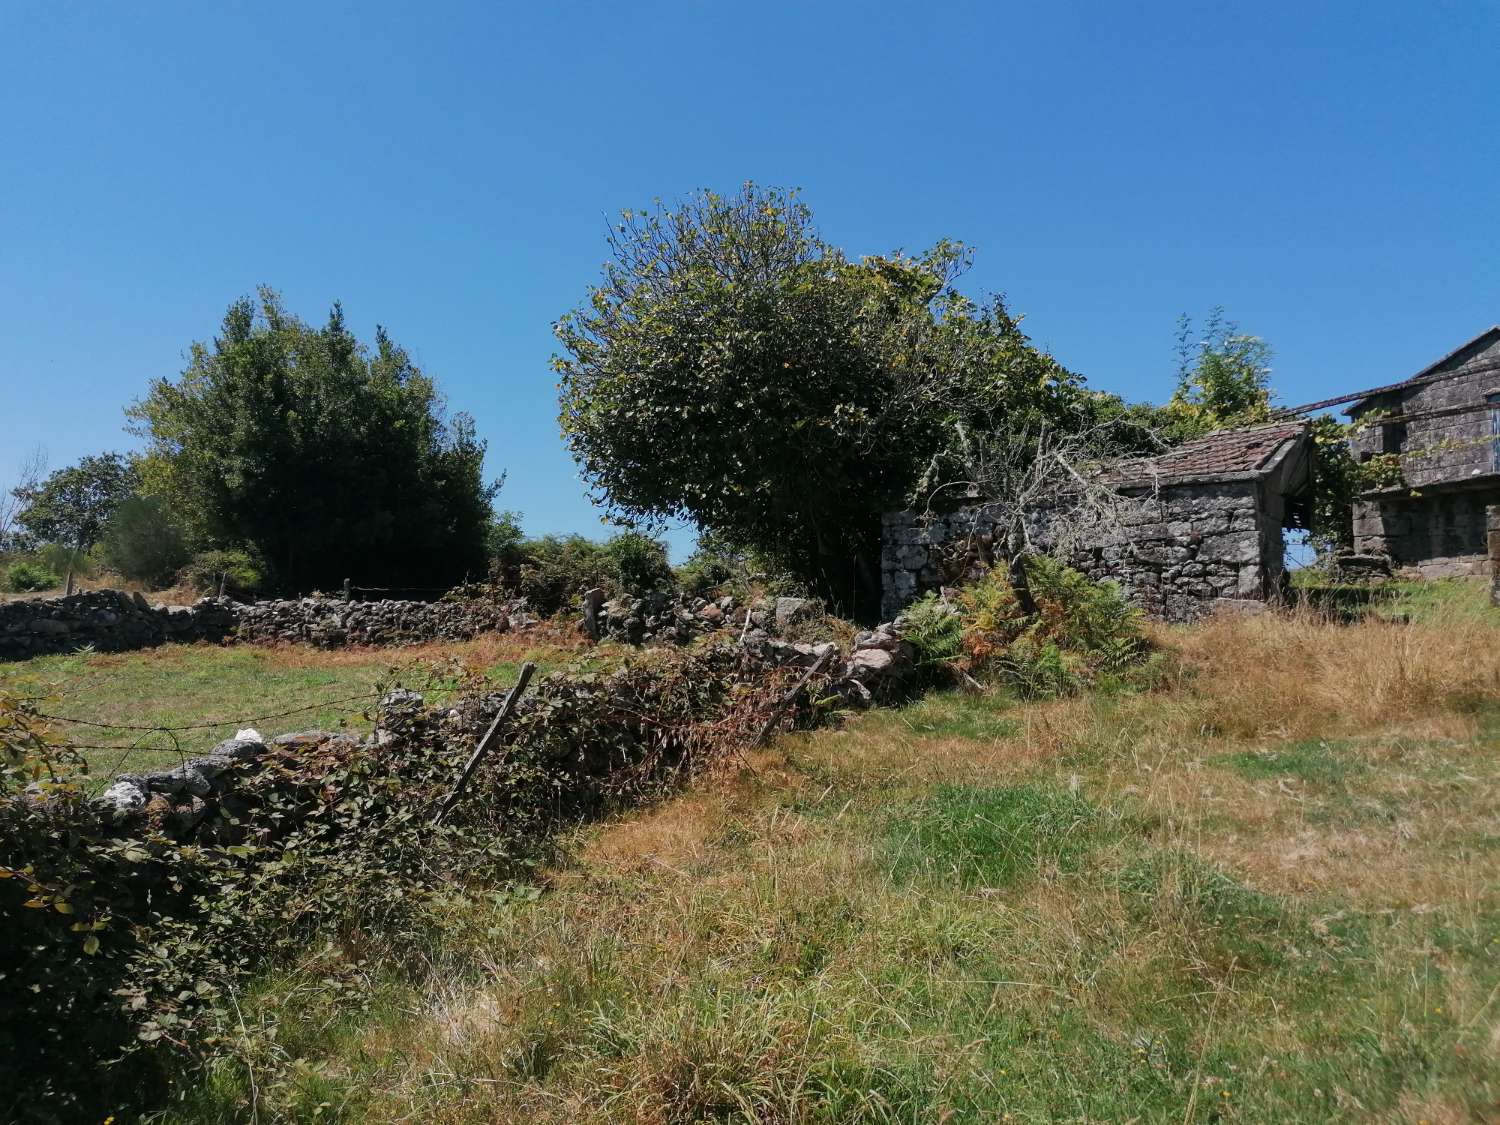 كوتوبادي: A7106: منزل حجري قديم مع مزرعة ، مع إطلالات جميلة على الوادي ...